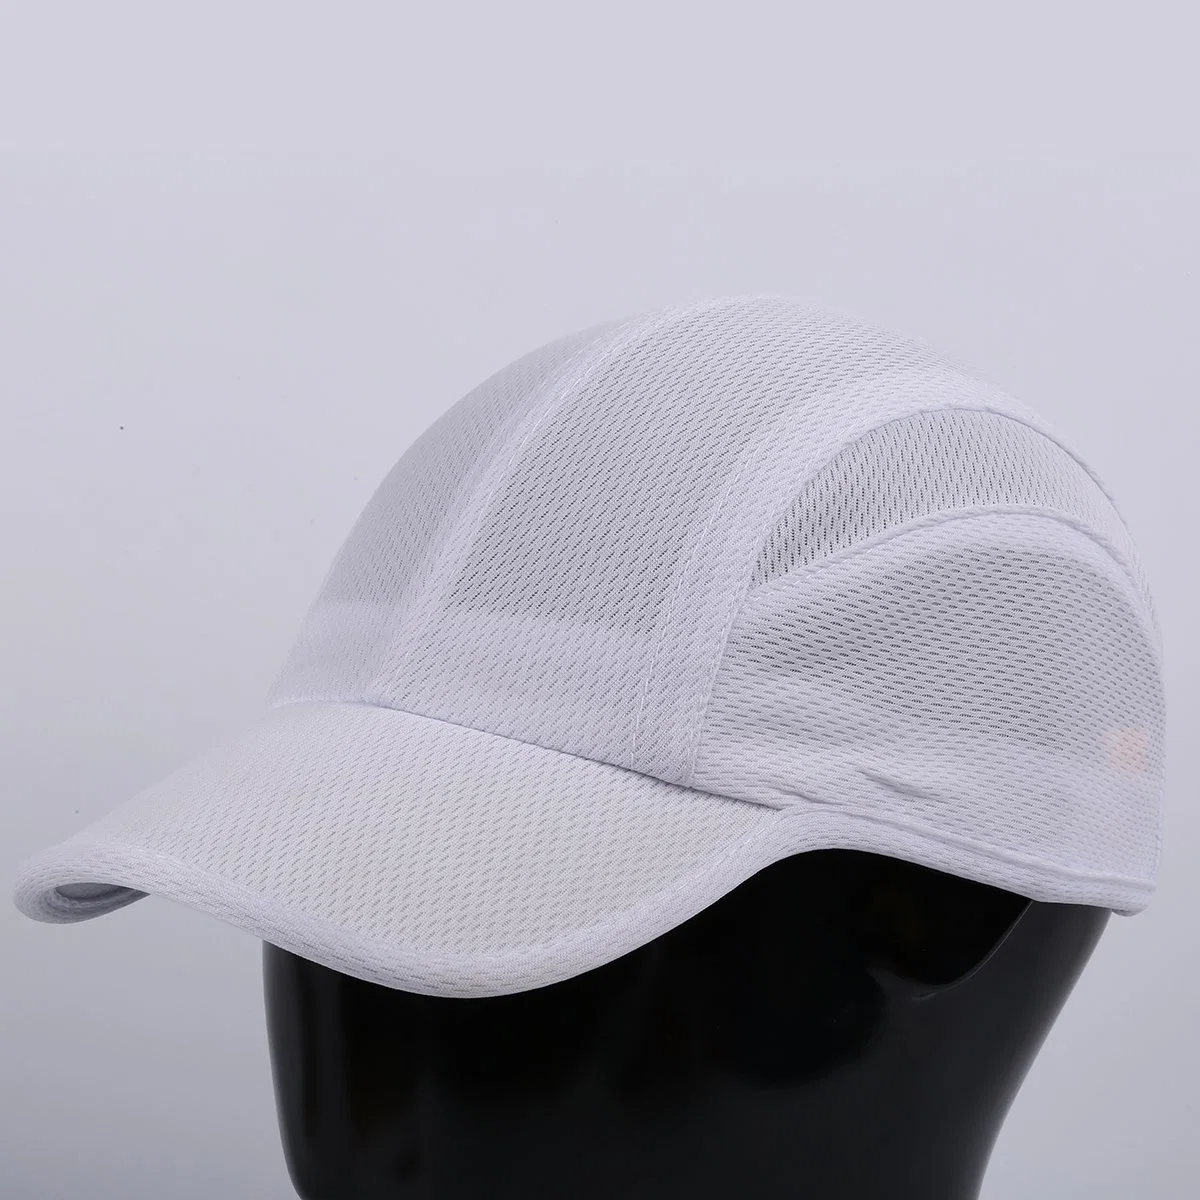 Custom легкие летние спортивные ячеистой шляпы Регулируемый спортивный крышки